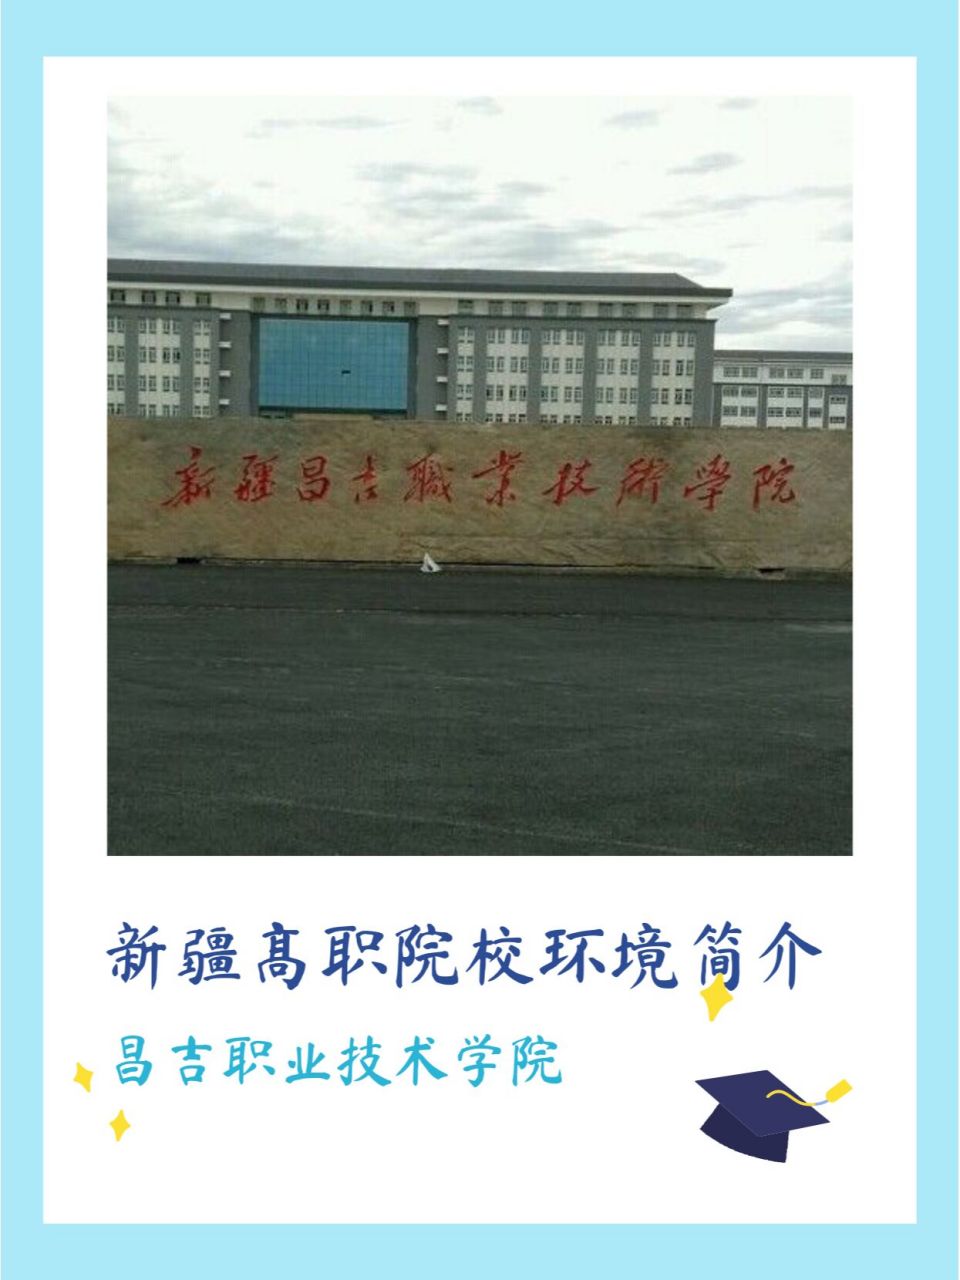 昌吉职业技术学院报名图片